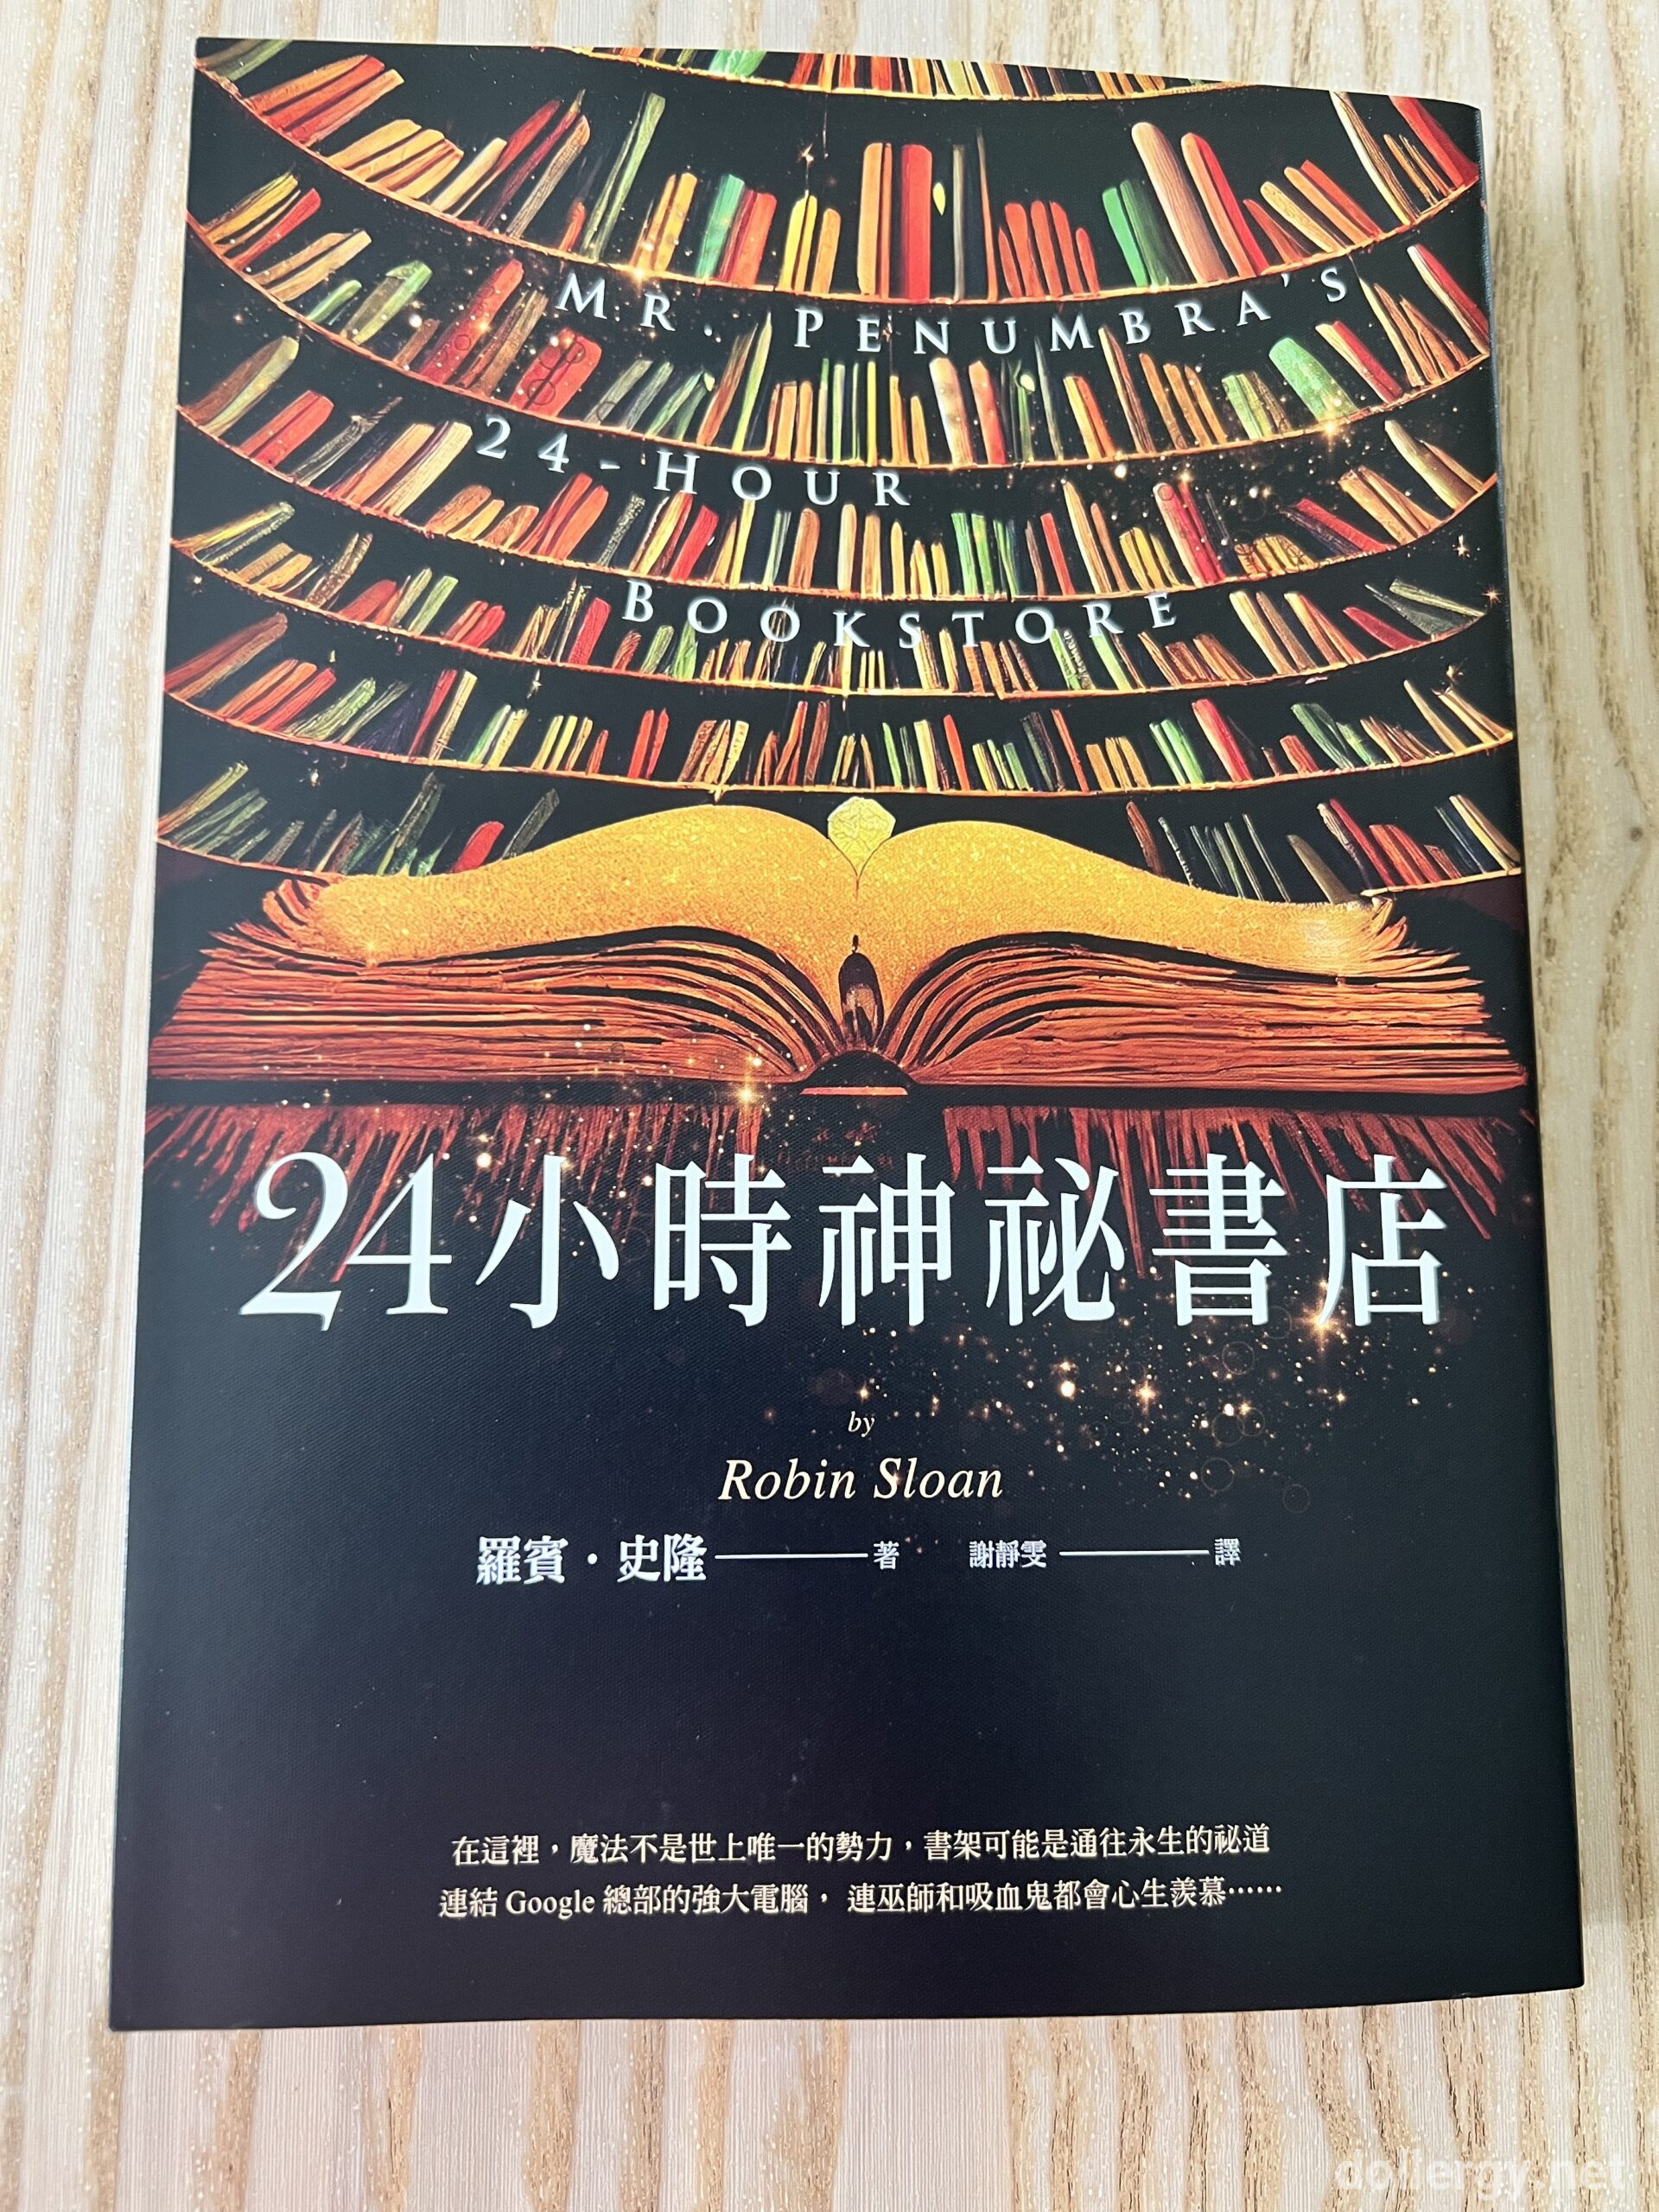 24小時神祕書店 Book Cover